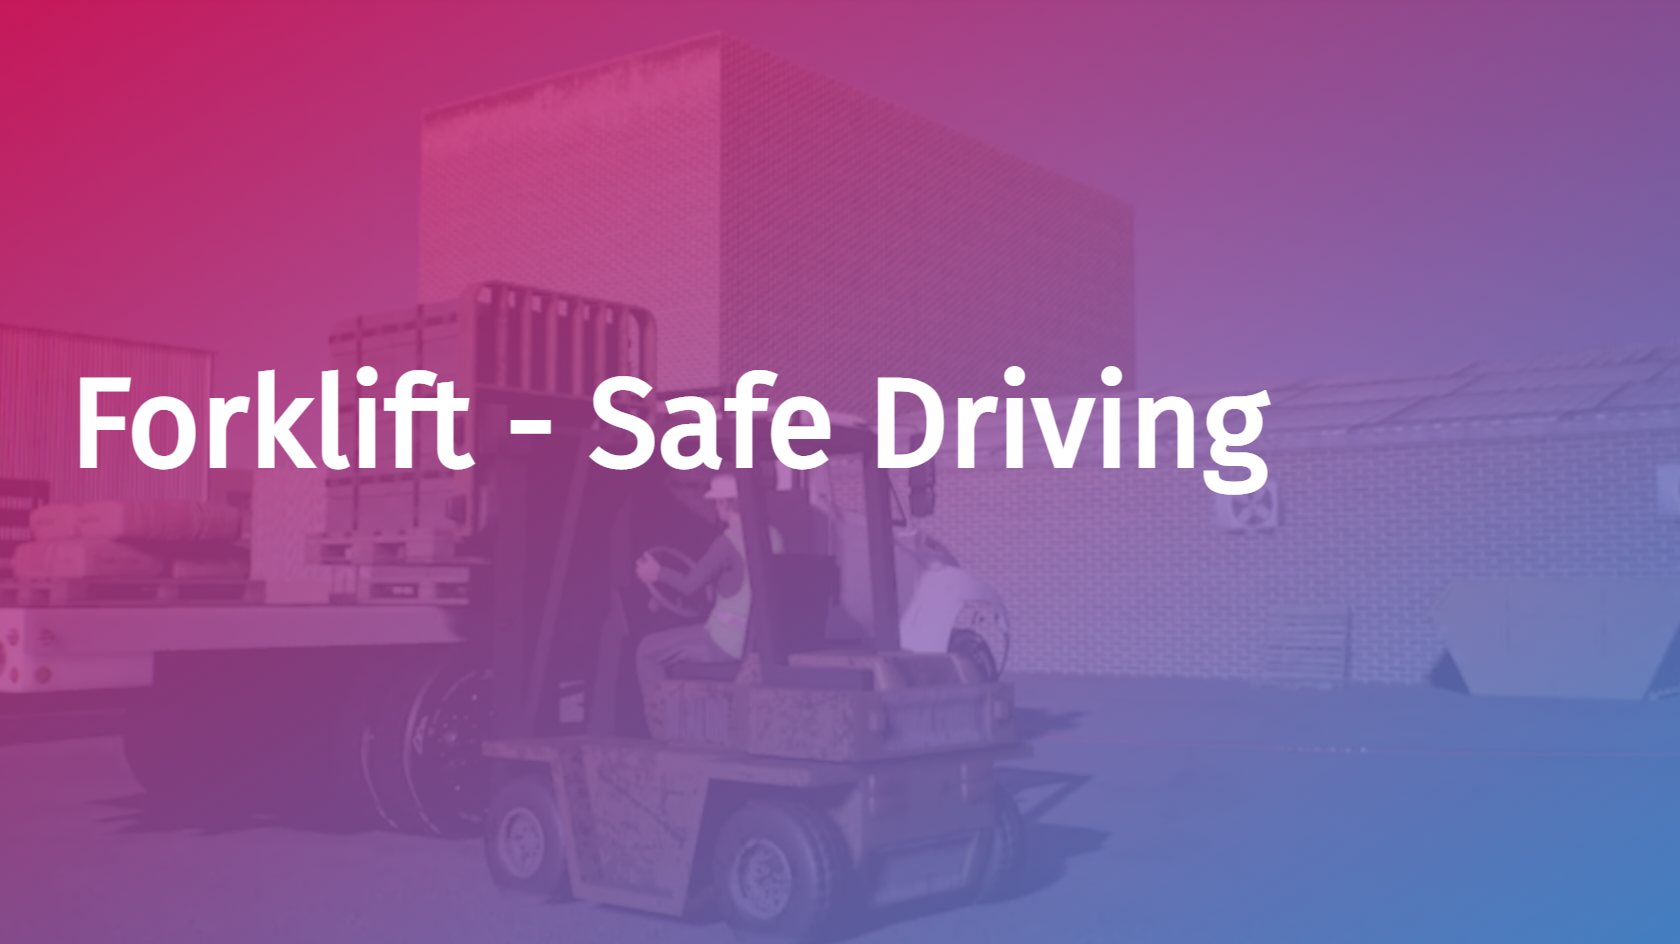 Forklift - Safe Driving